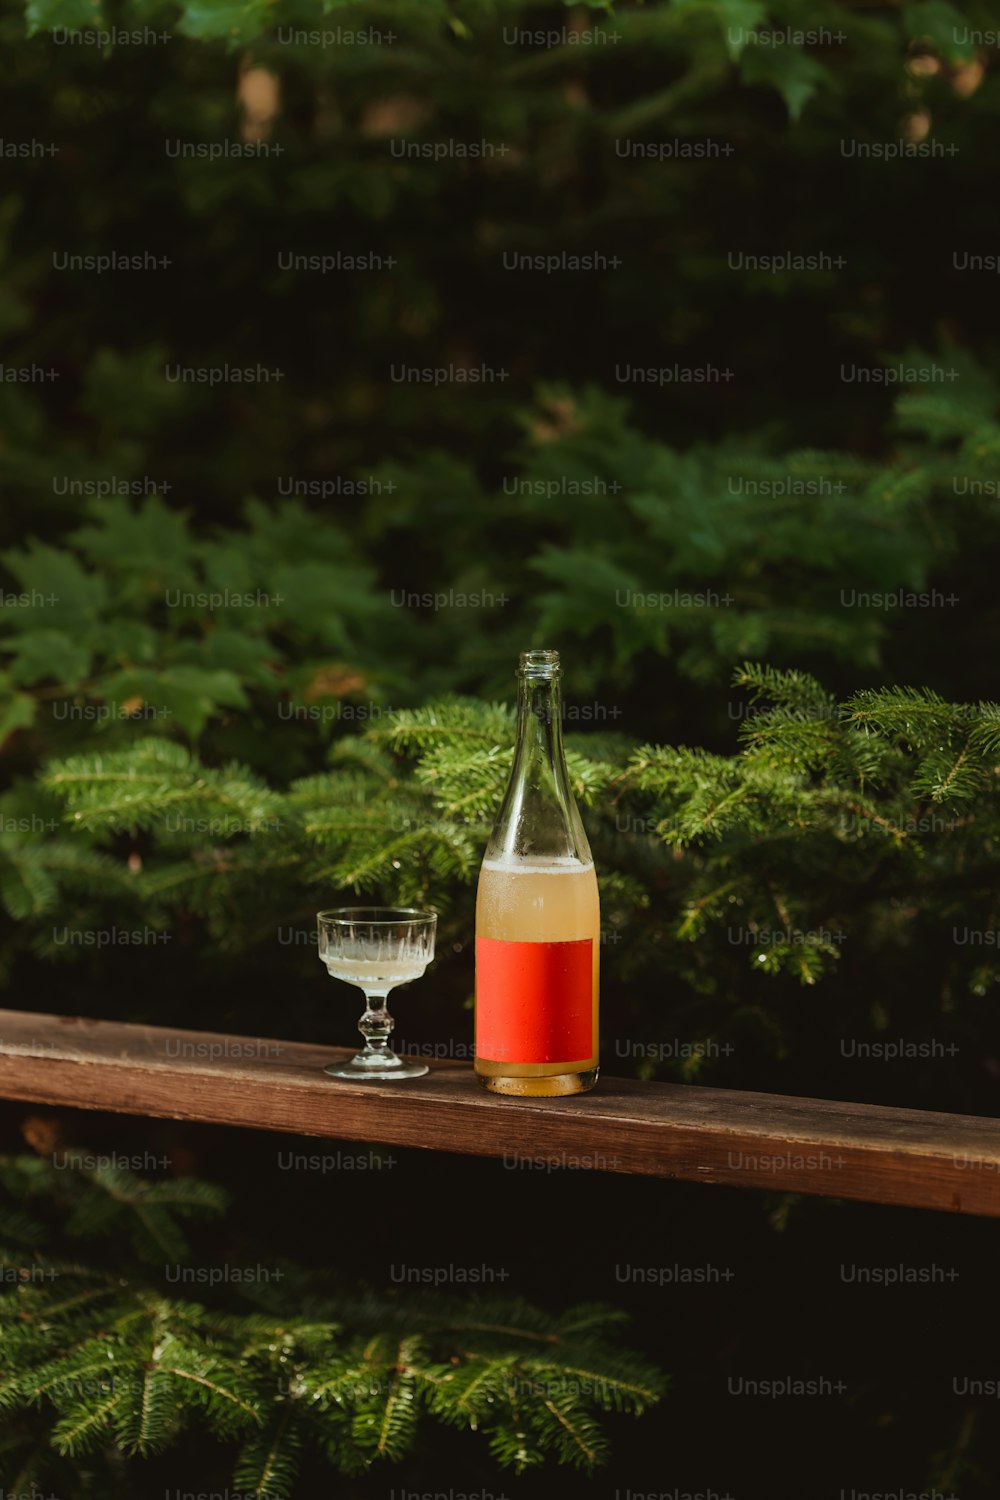 eine Flasche Wein und ein Glas auf einem Tisch